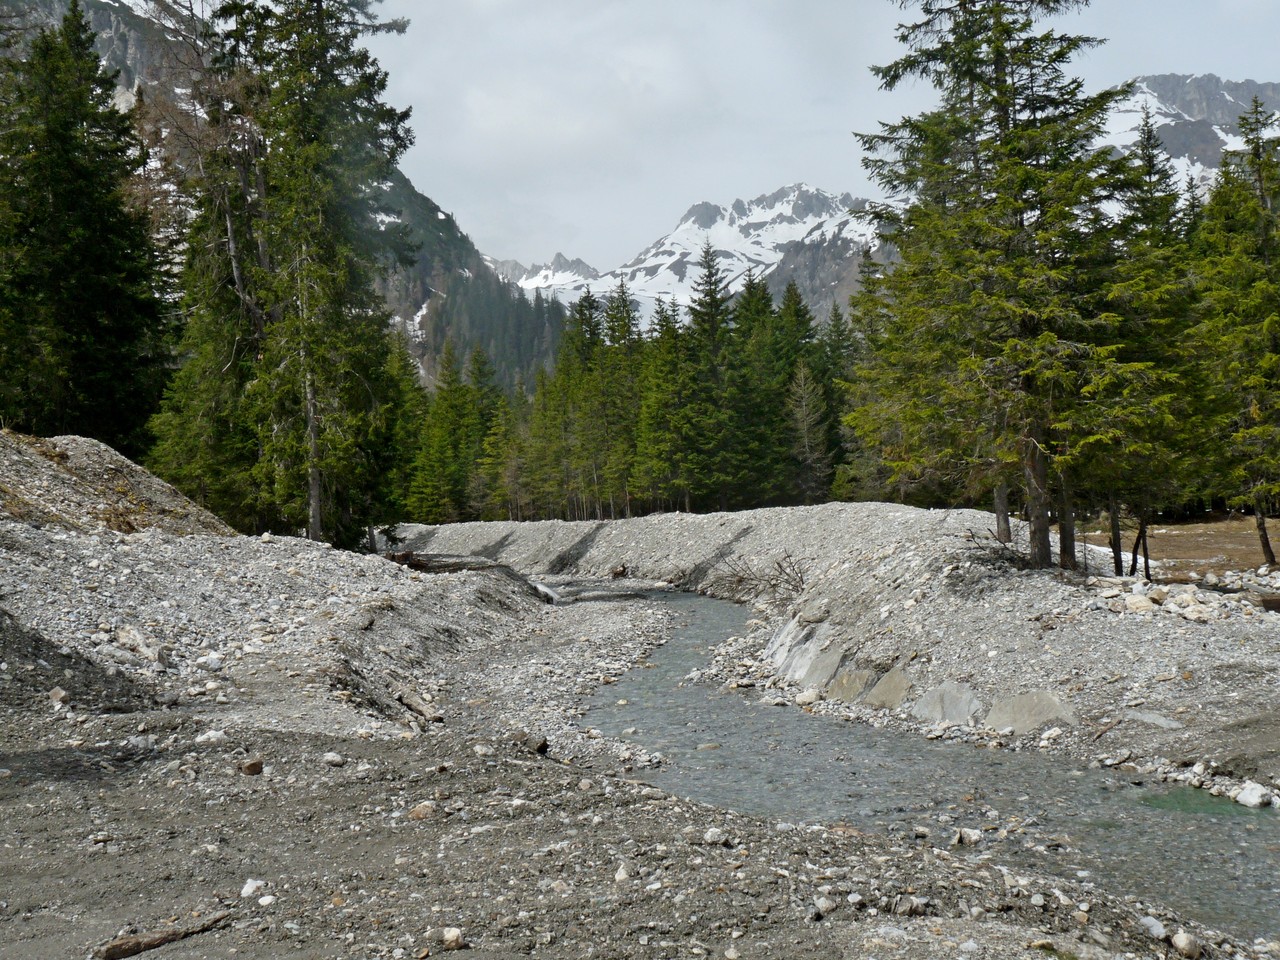 Berge von Schotter werden vom Schnee und Wasser heruntergetragen